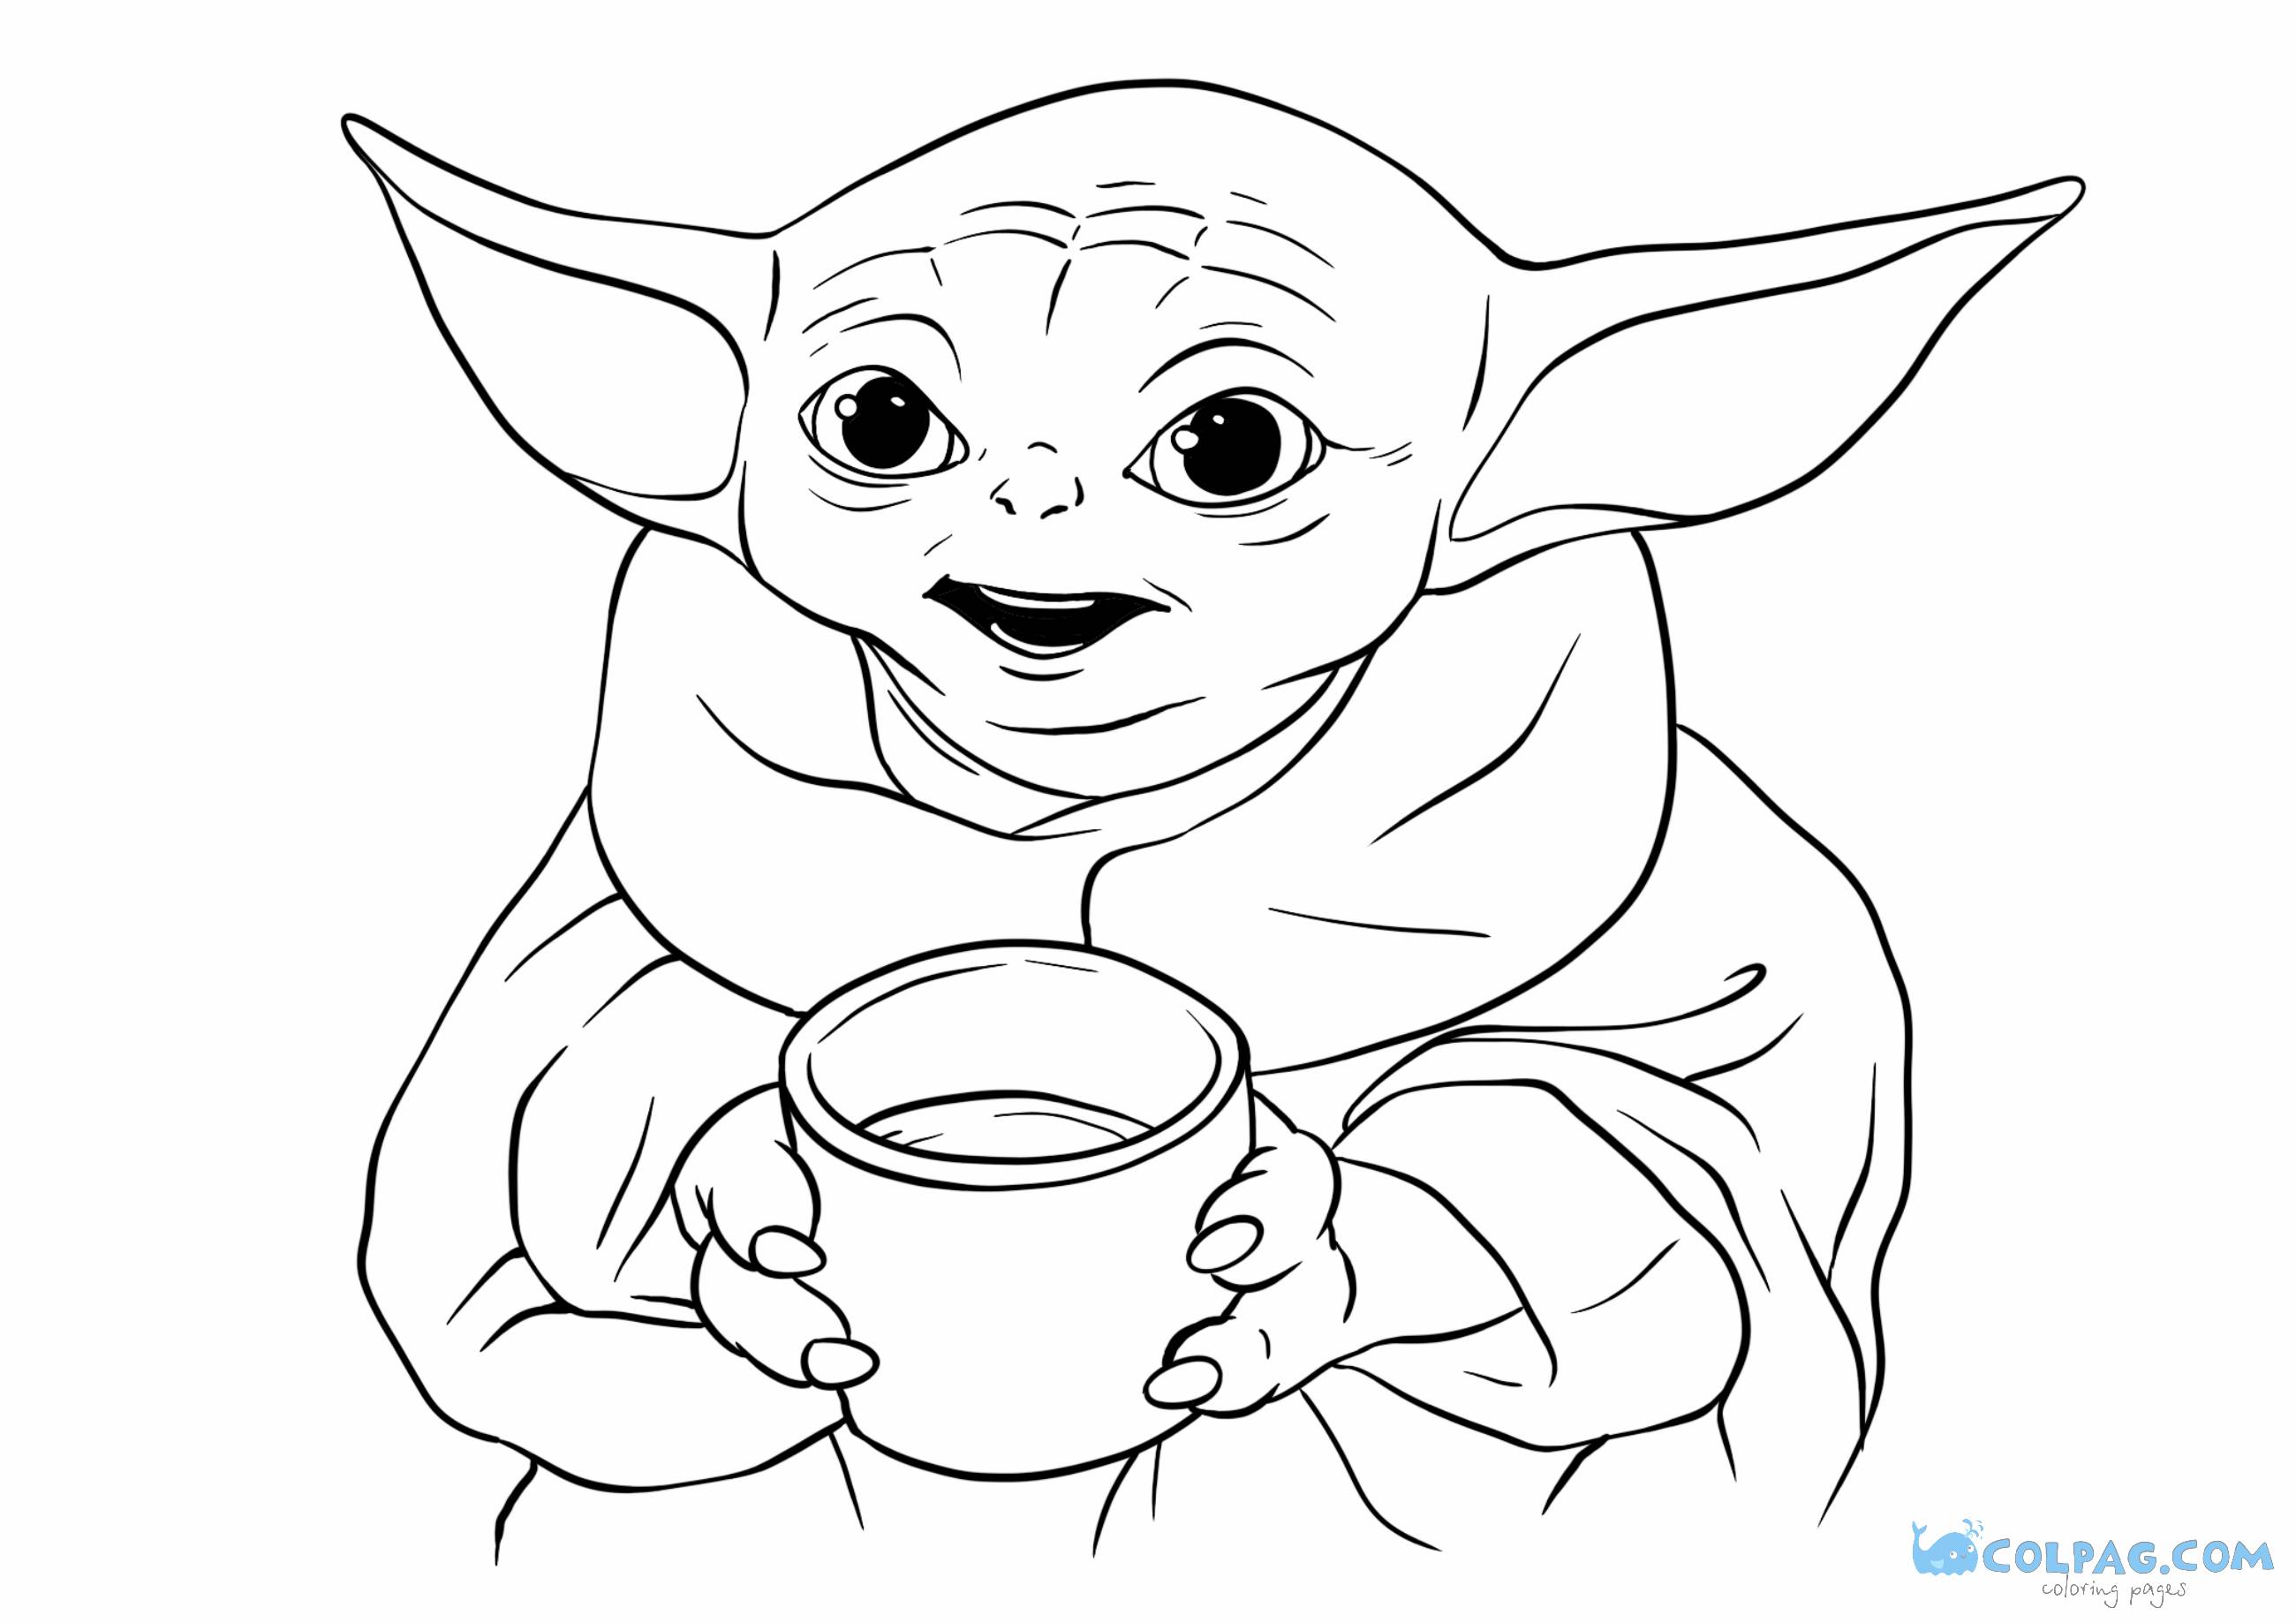 Bebé Yoda nuevos dibujos para colorear